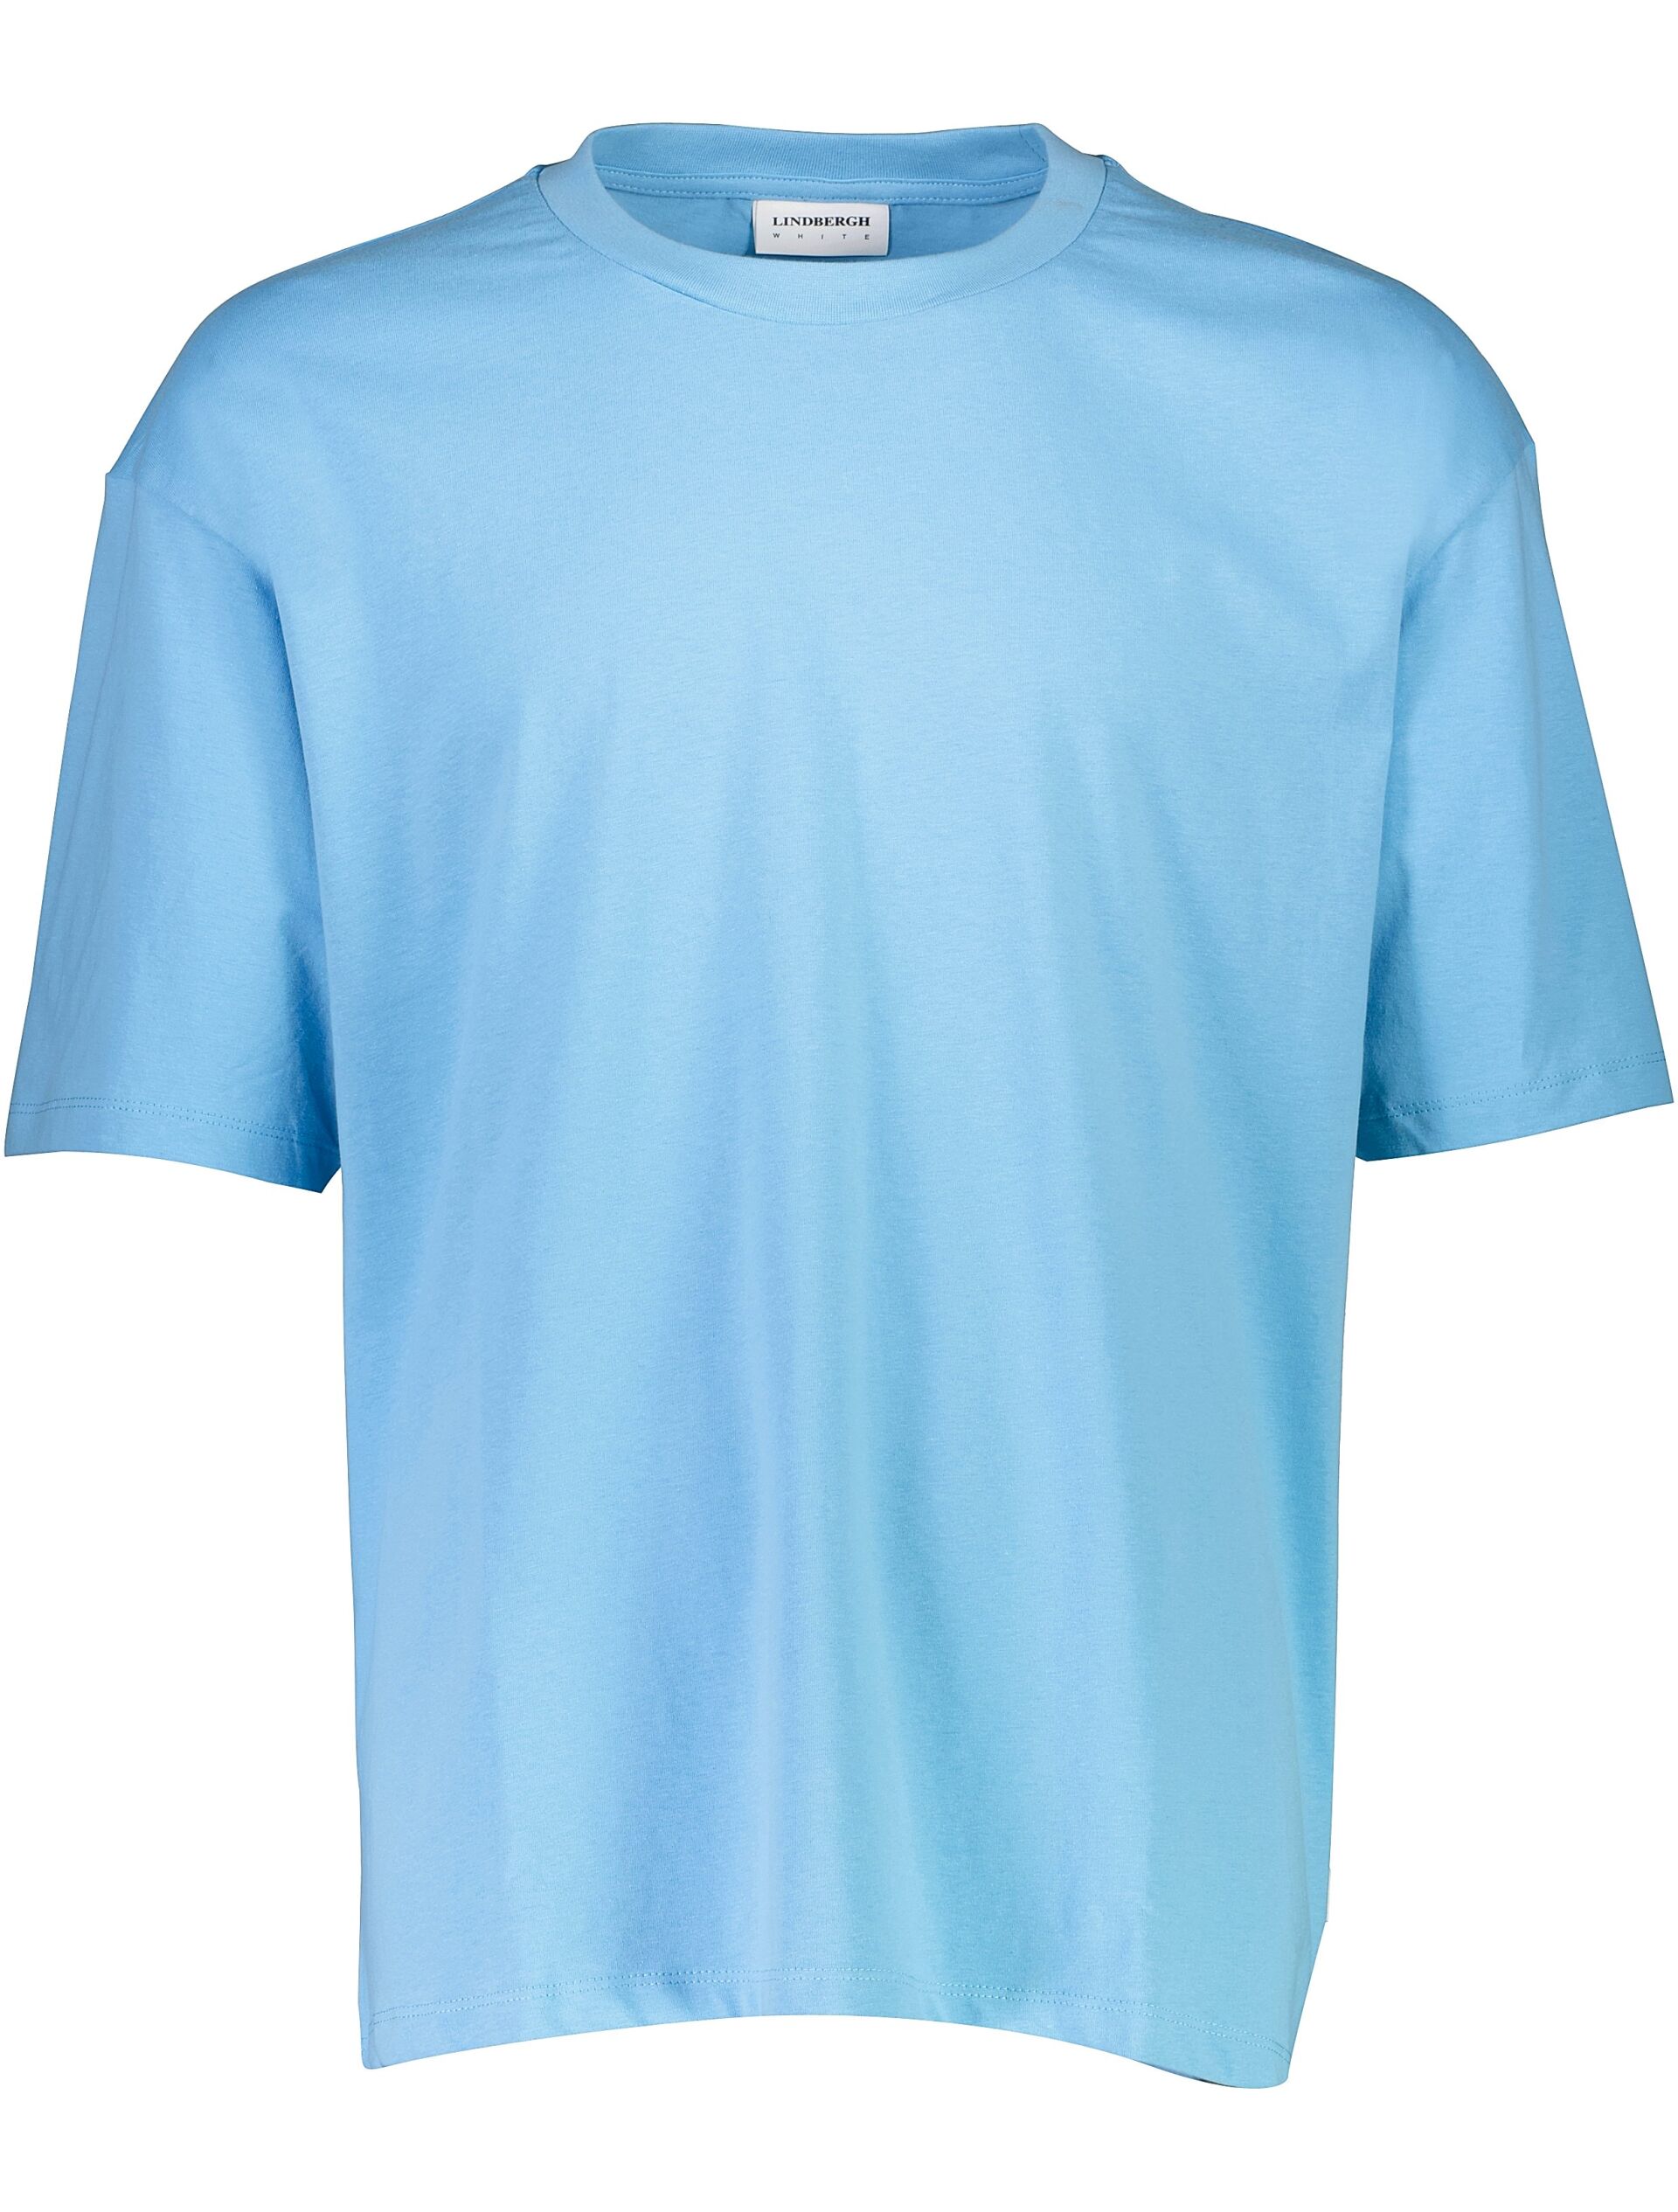 T-shirt T-shirt Blau 30-400198